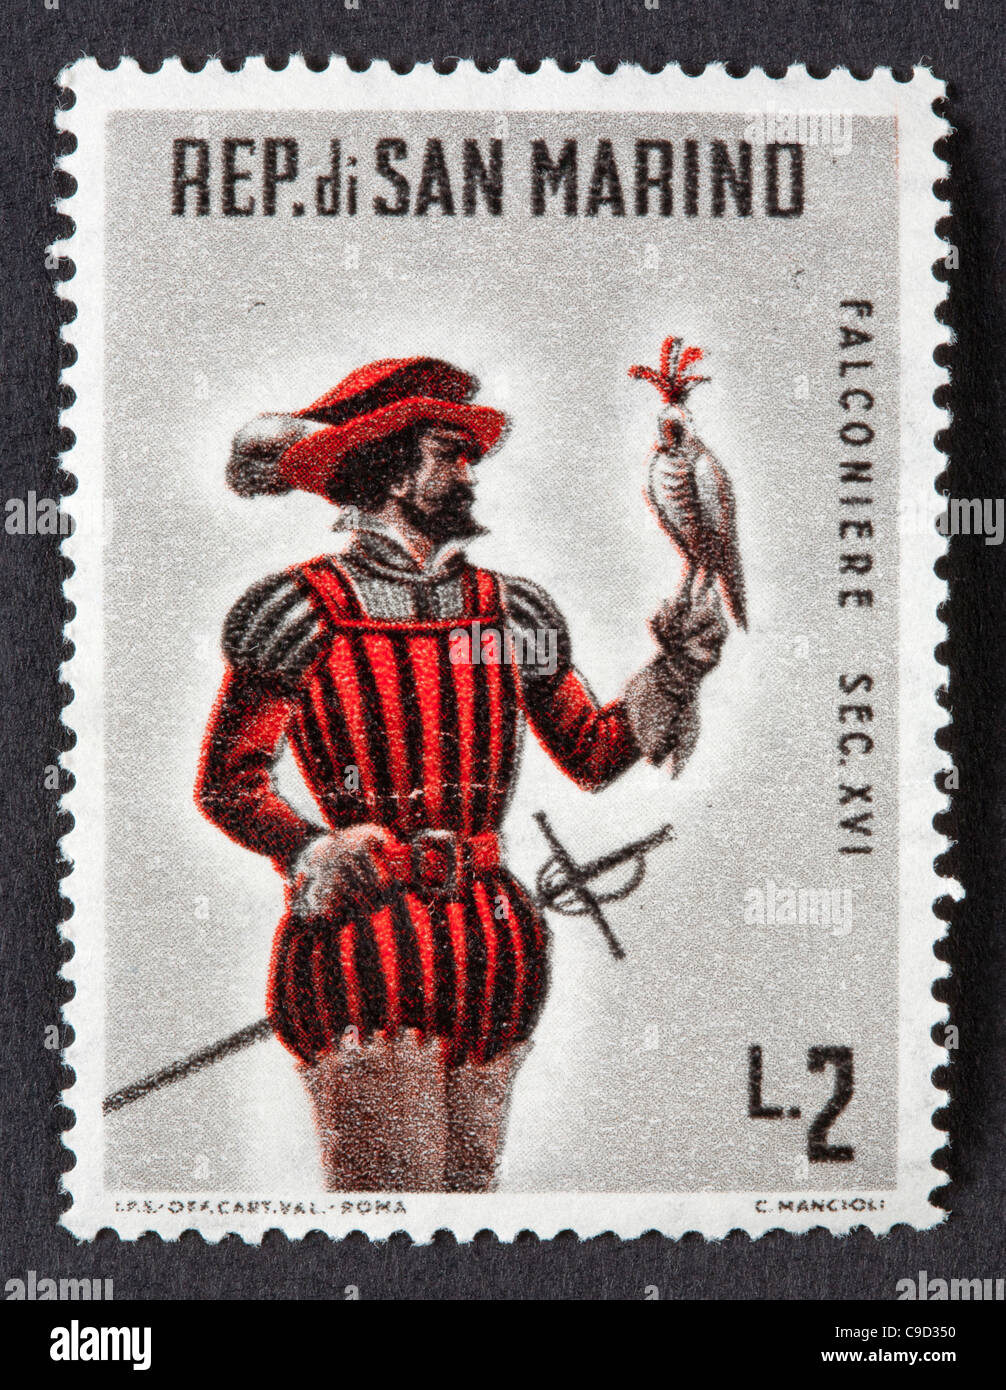 San marino postage stamp fotografías e imágenes de alta resolución - Alamy